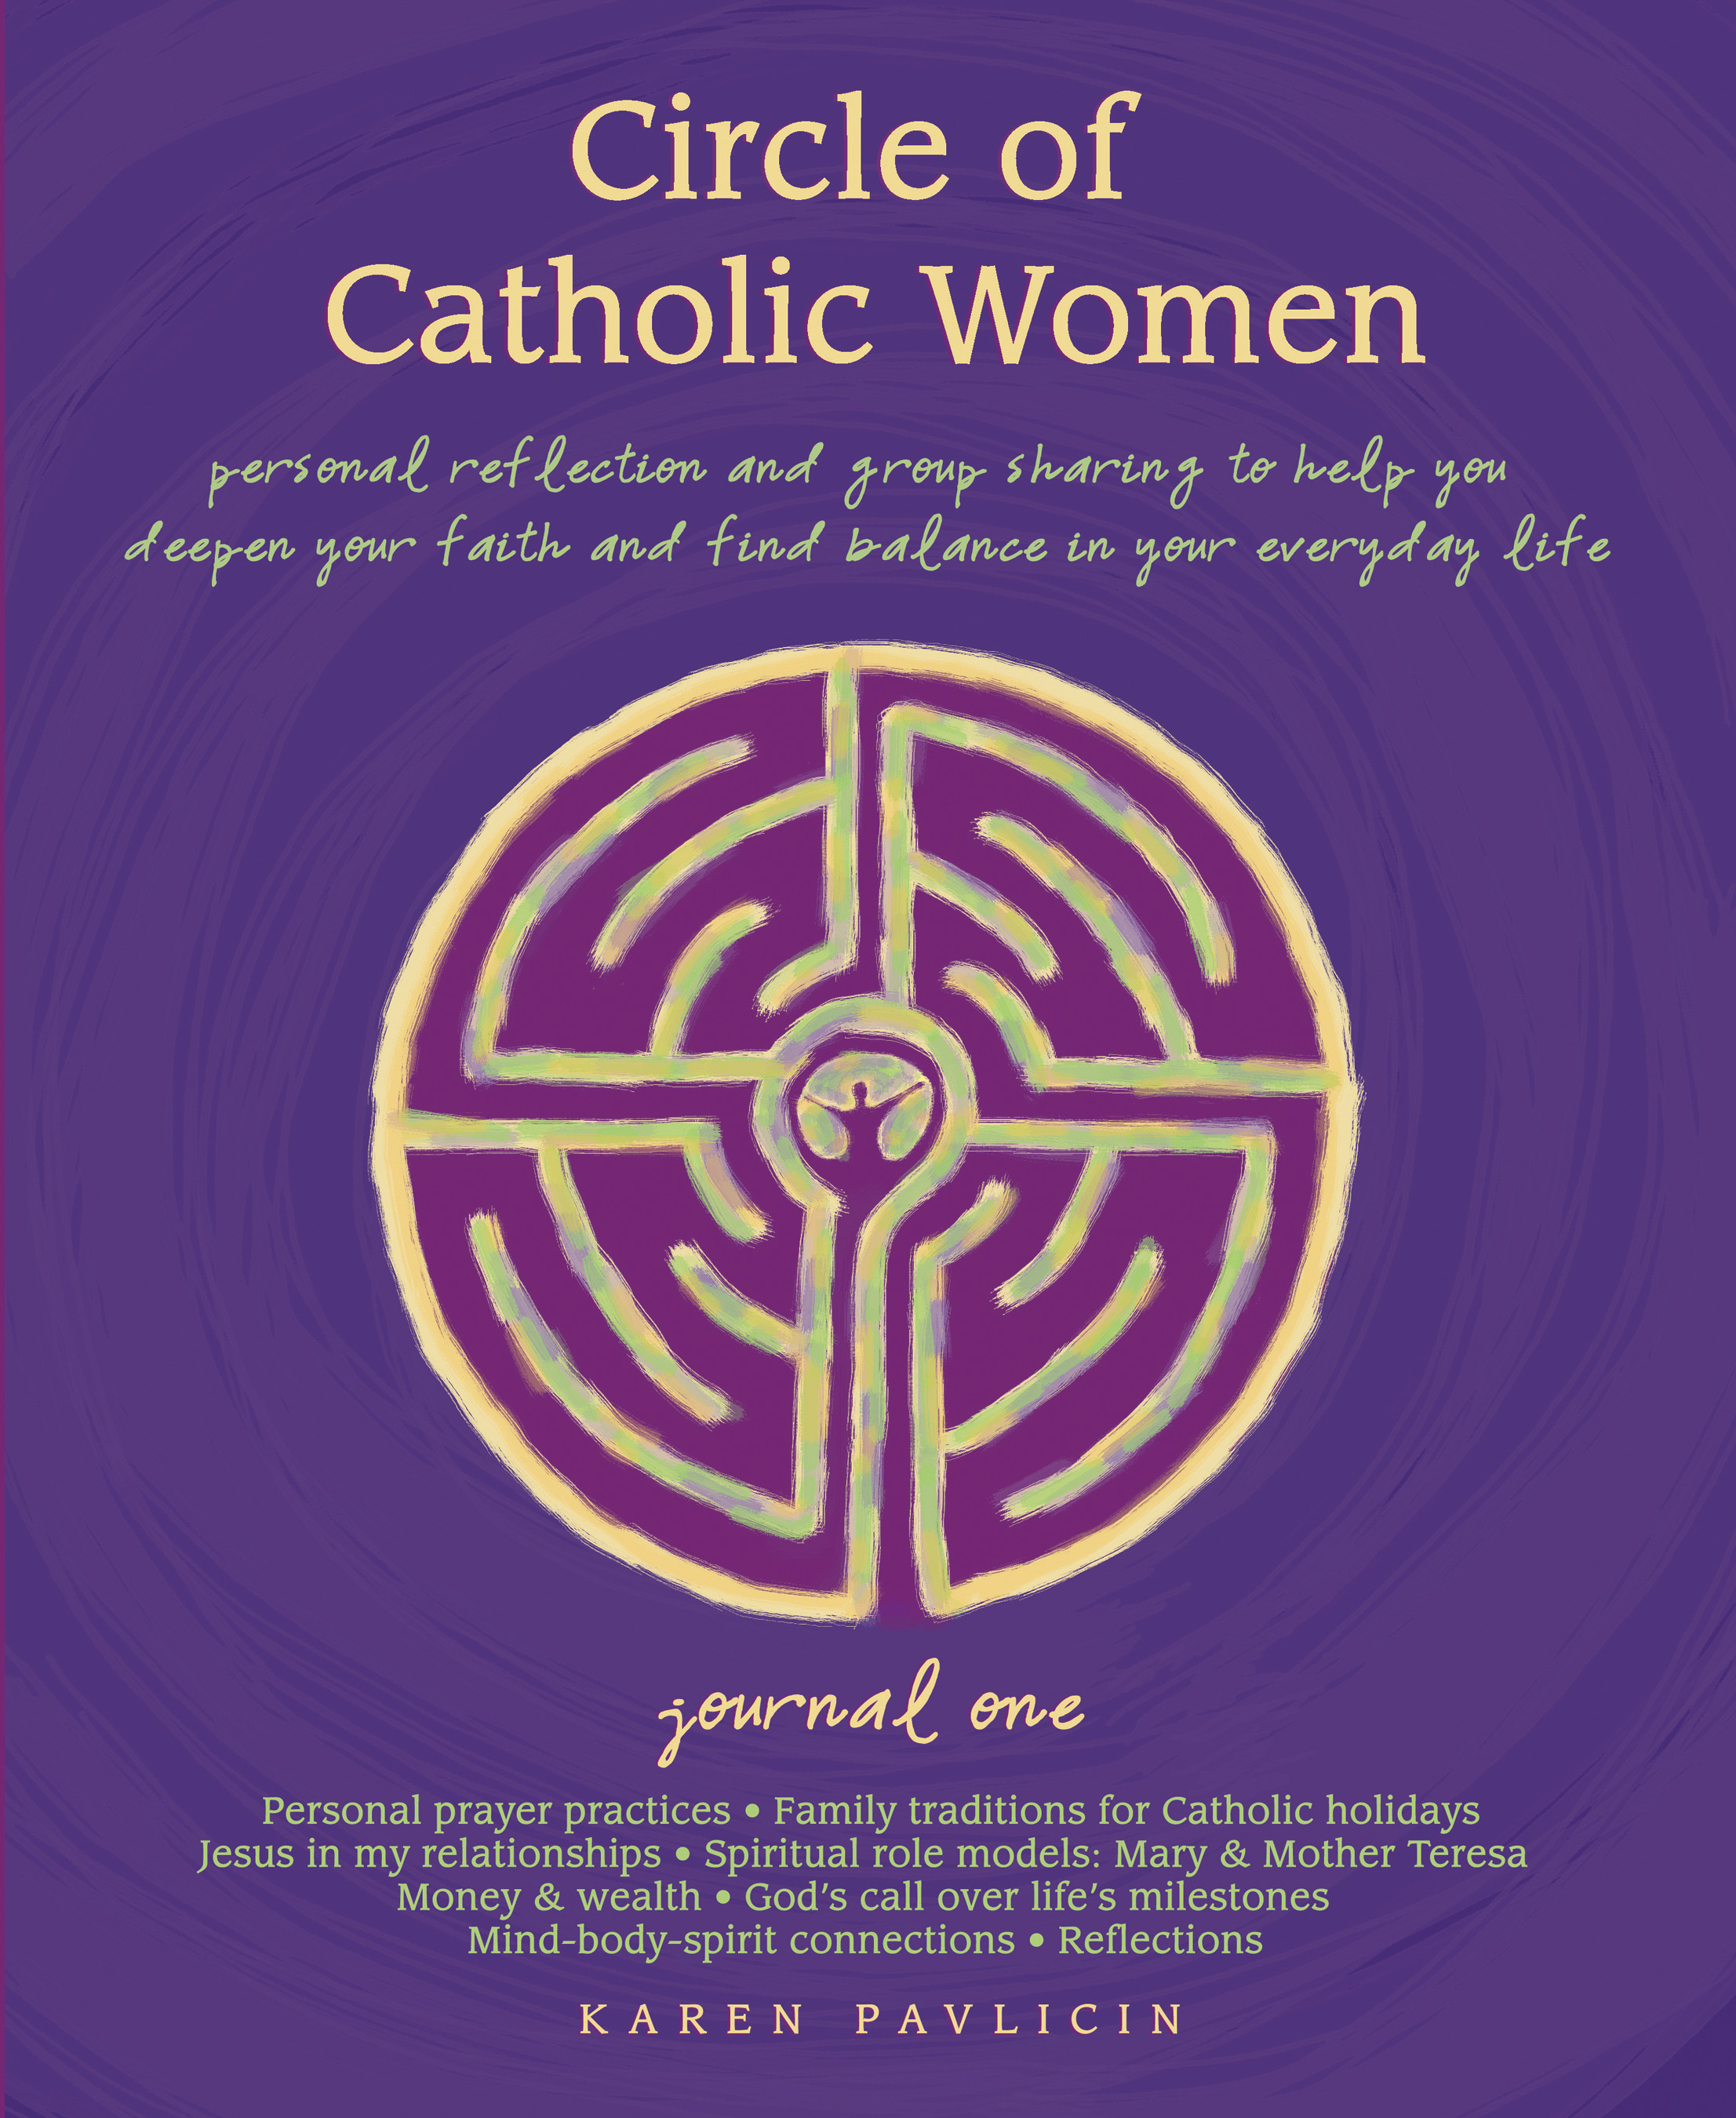 Circle of Catholic Women Journal One by Karen Pavlicin